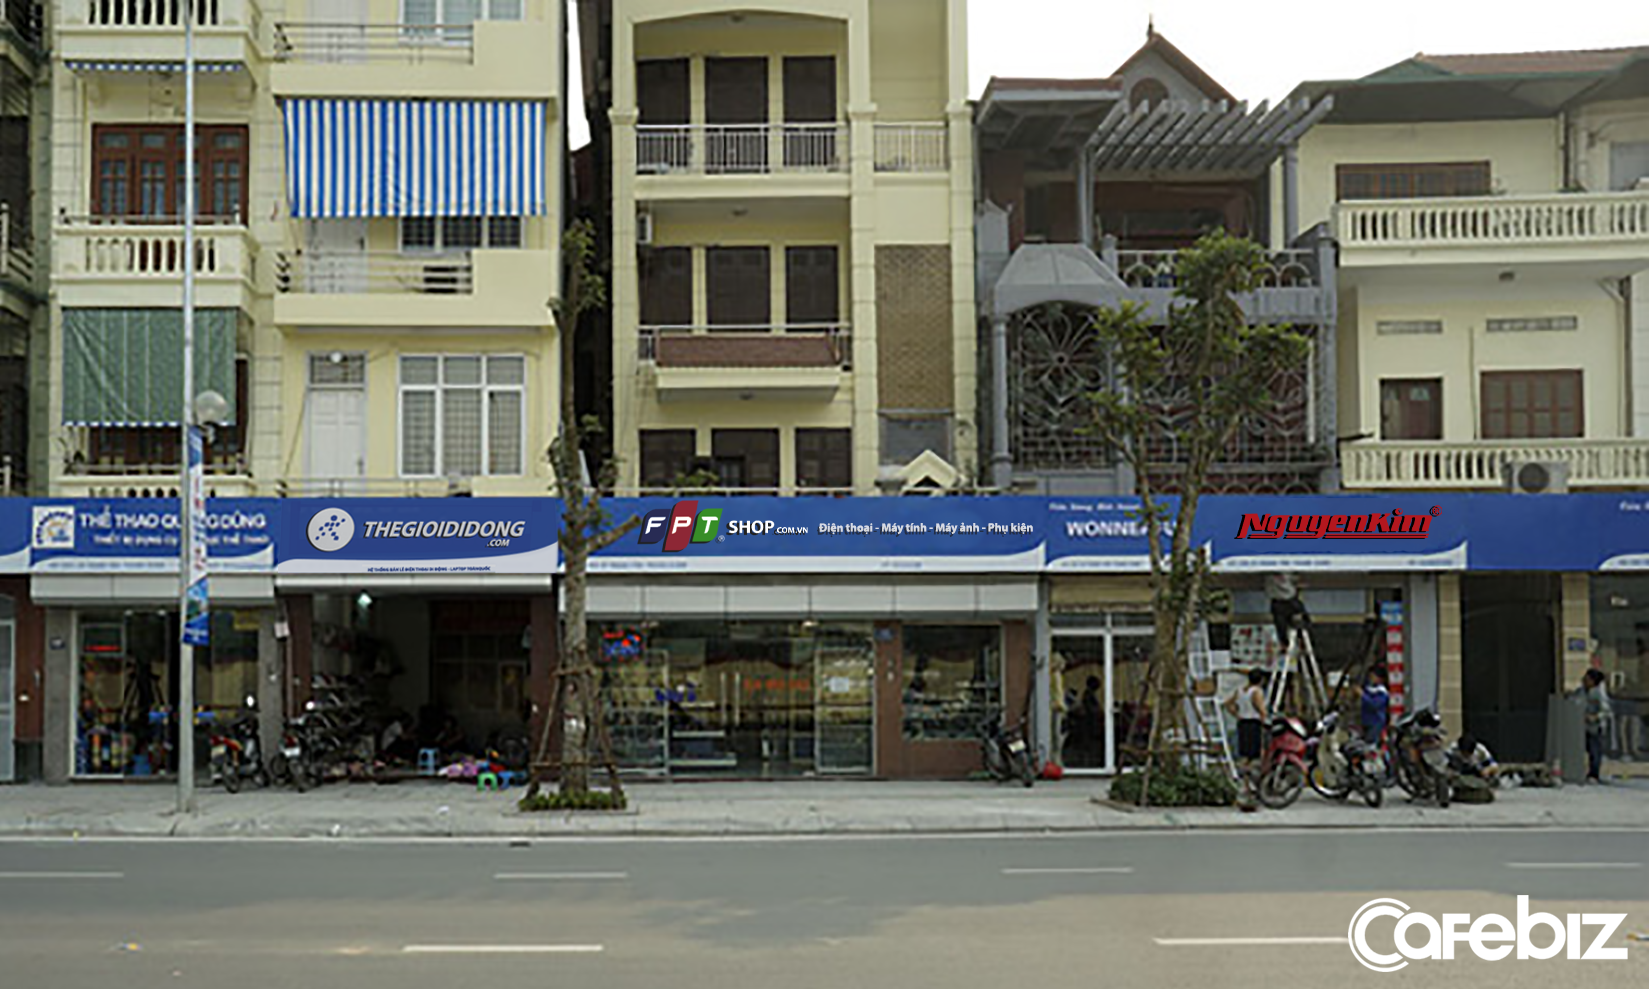 Ngắm bảng hiệu Thế giới di động, FPT Shop, Nguyễn Kim được quy hoạch đồng bộ trên con phố kiểu mẫu của Thủ đô - Ảnh 5.